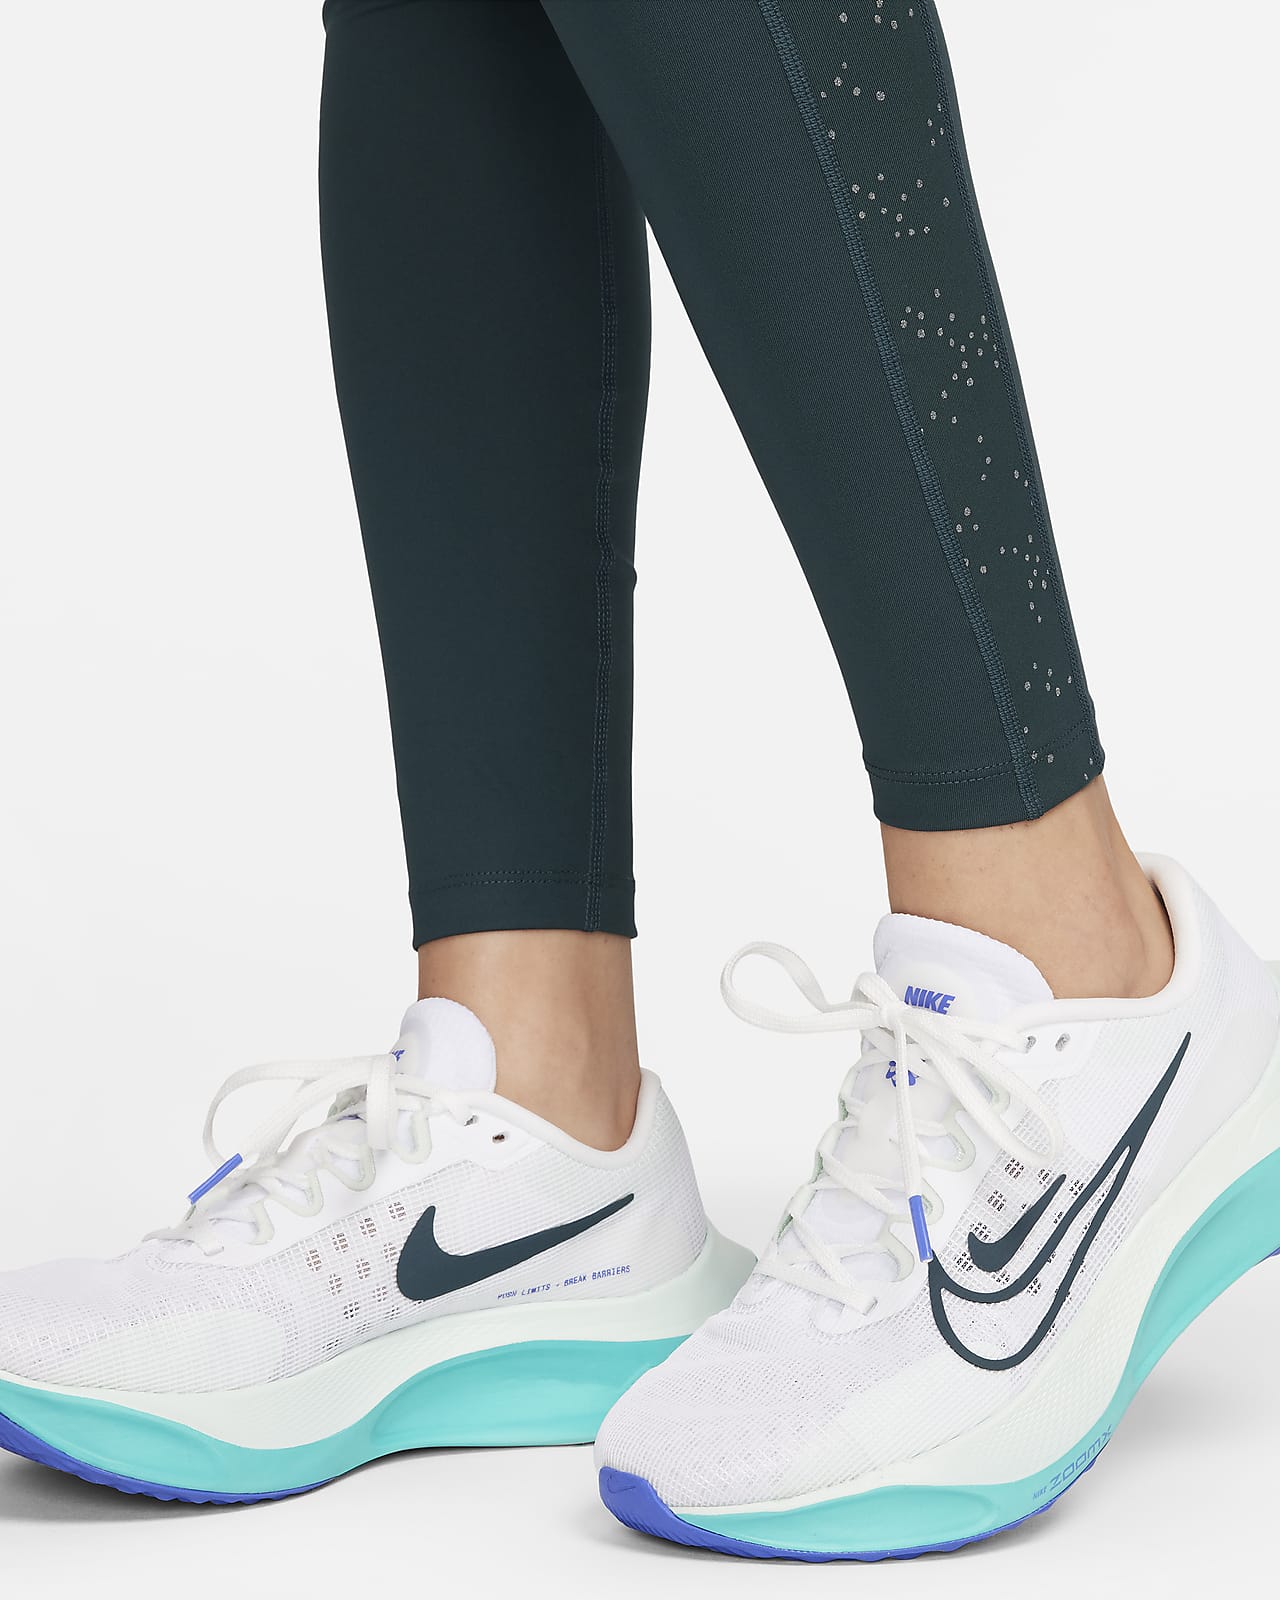 Nike Pro 7/8-Leggings mit mittelhohem Bund und Taschen für Damen. Nike CH